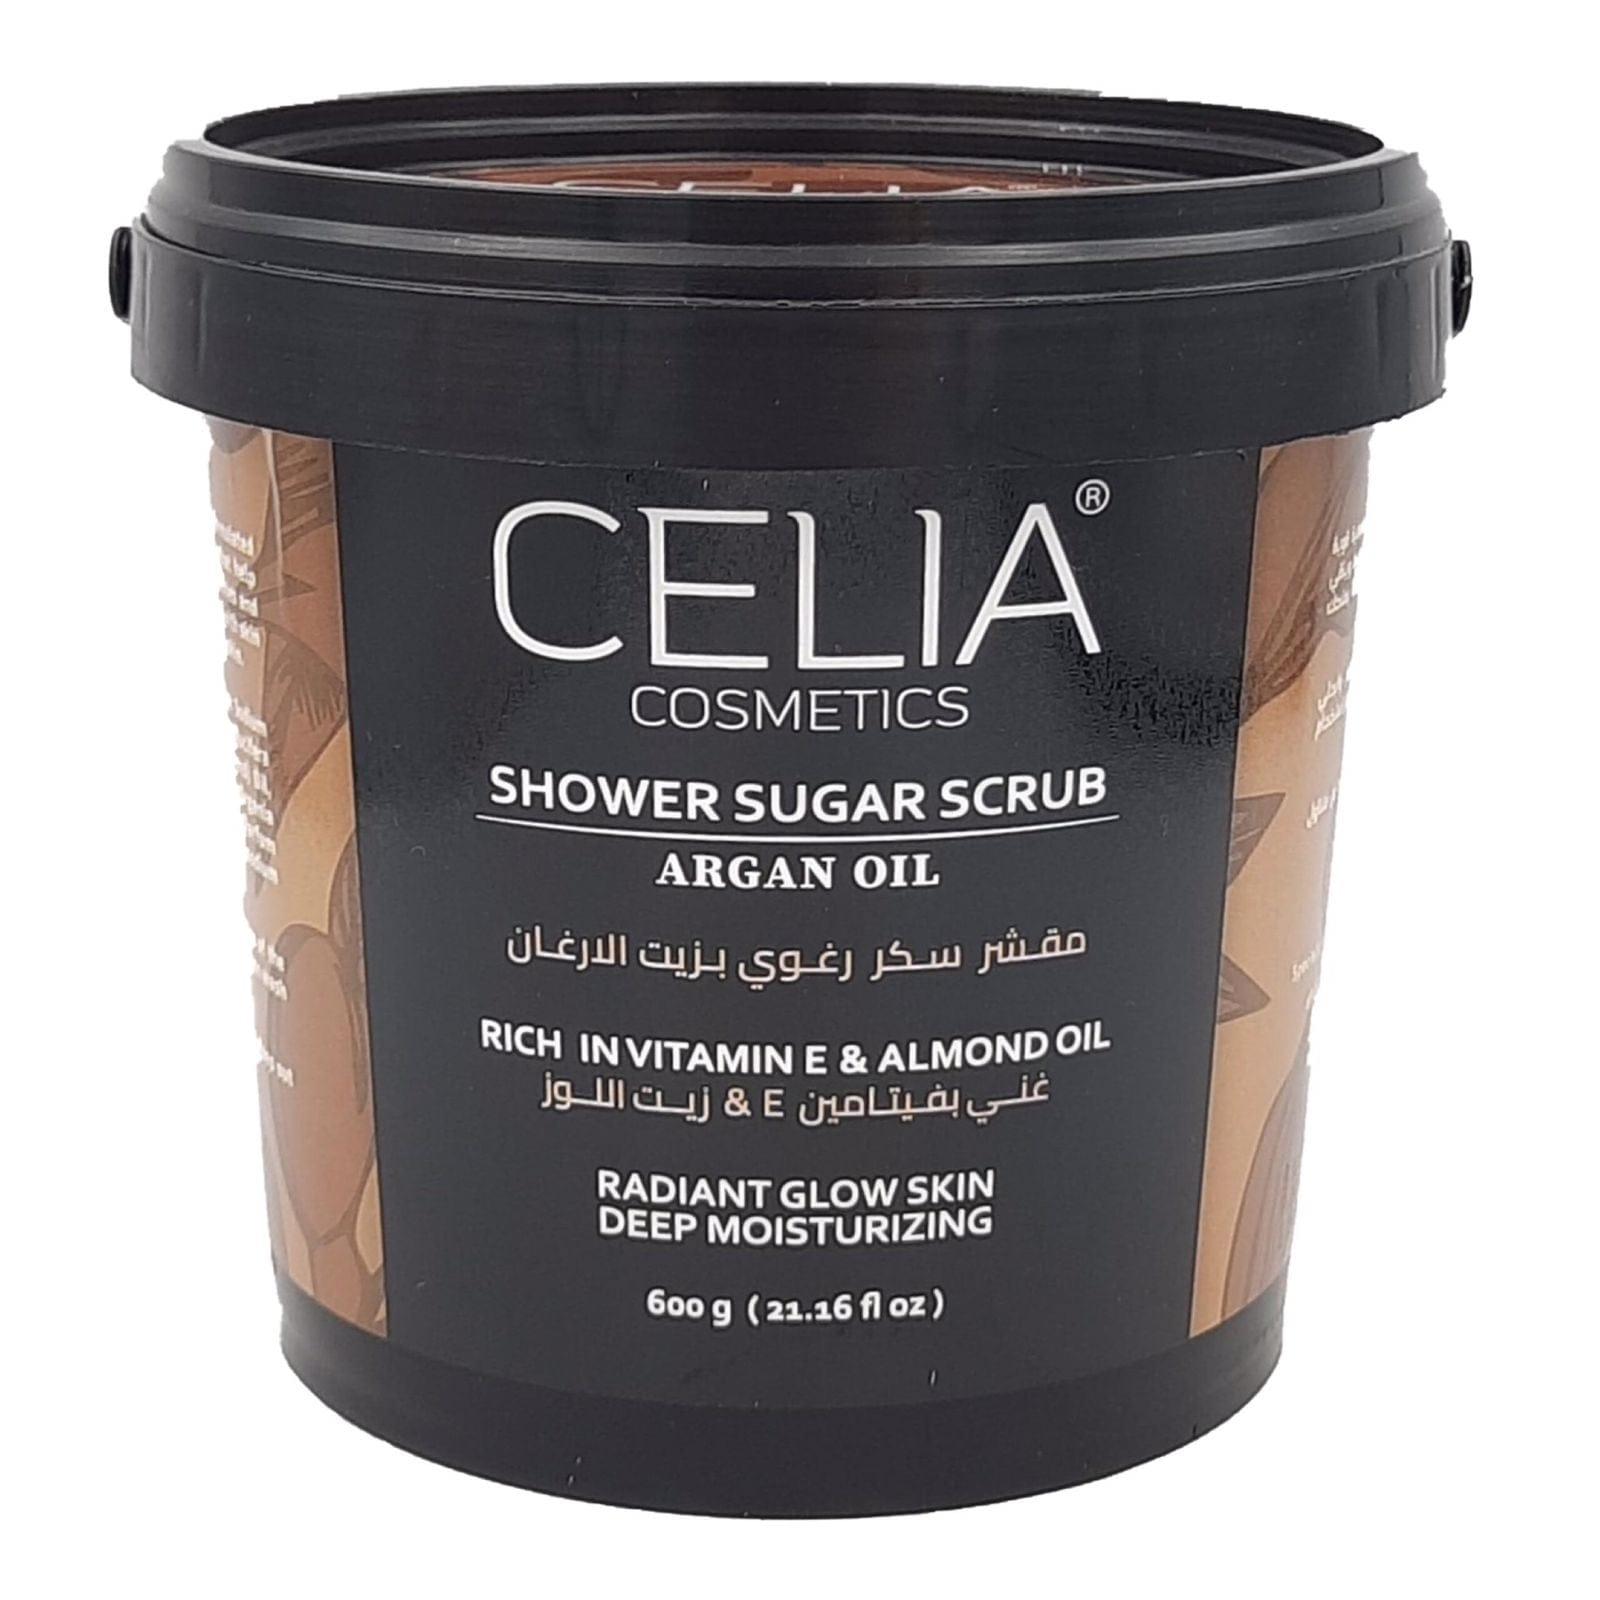 Celia Shower Sugar Scrub With Argan Oil 600g